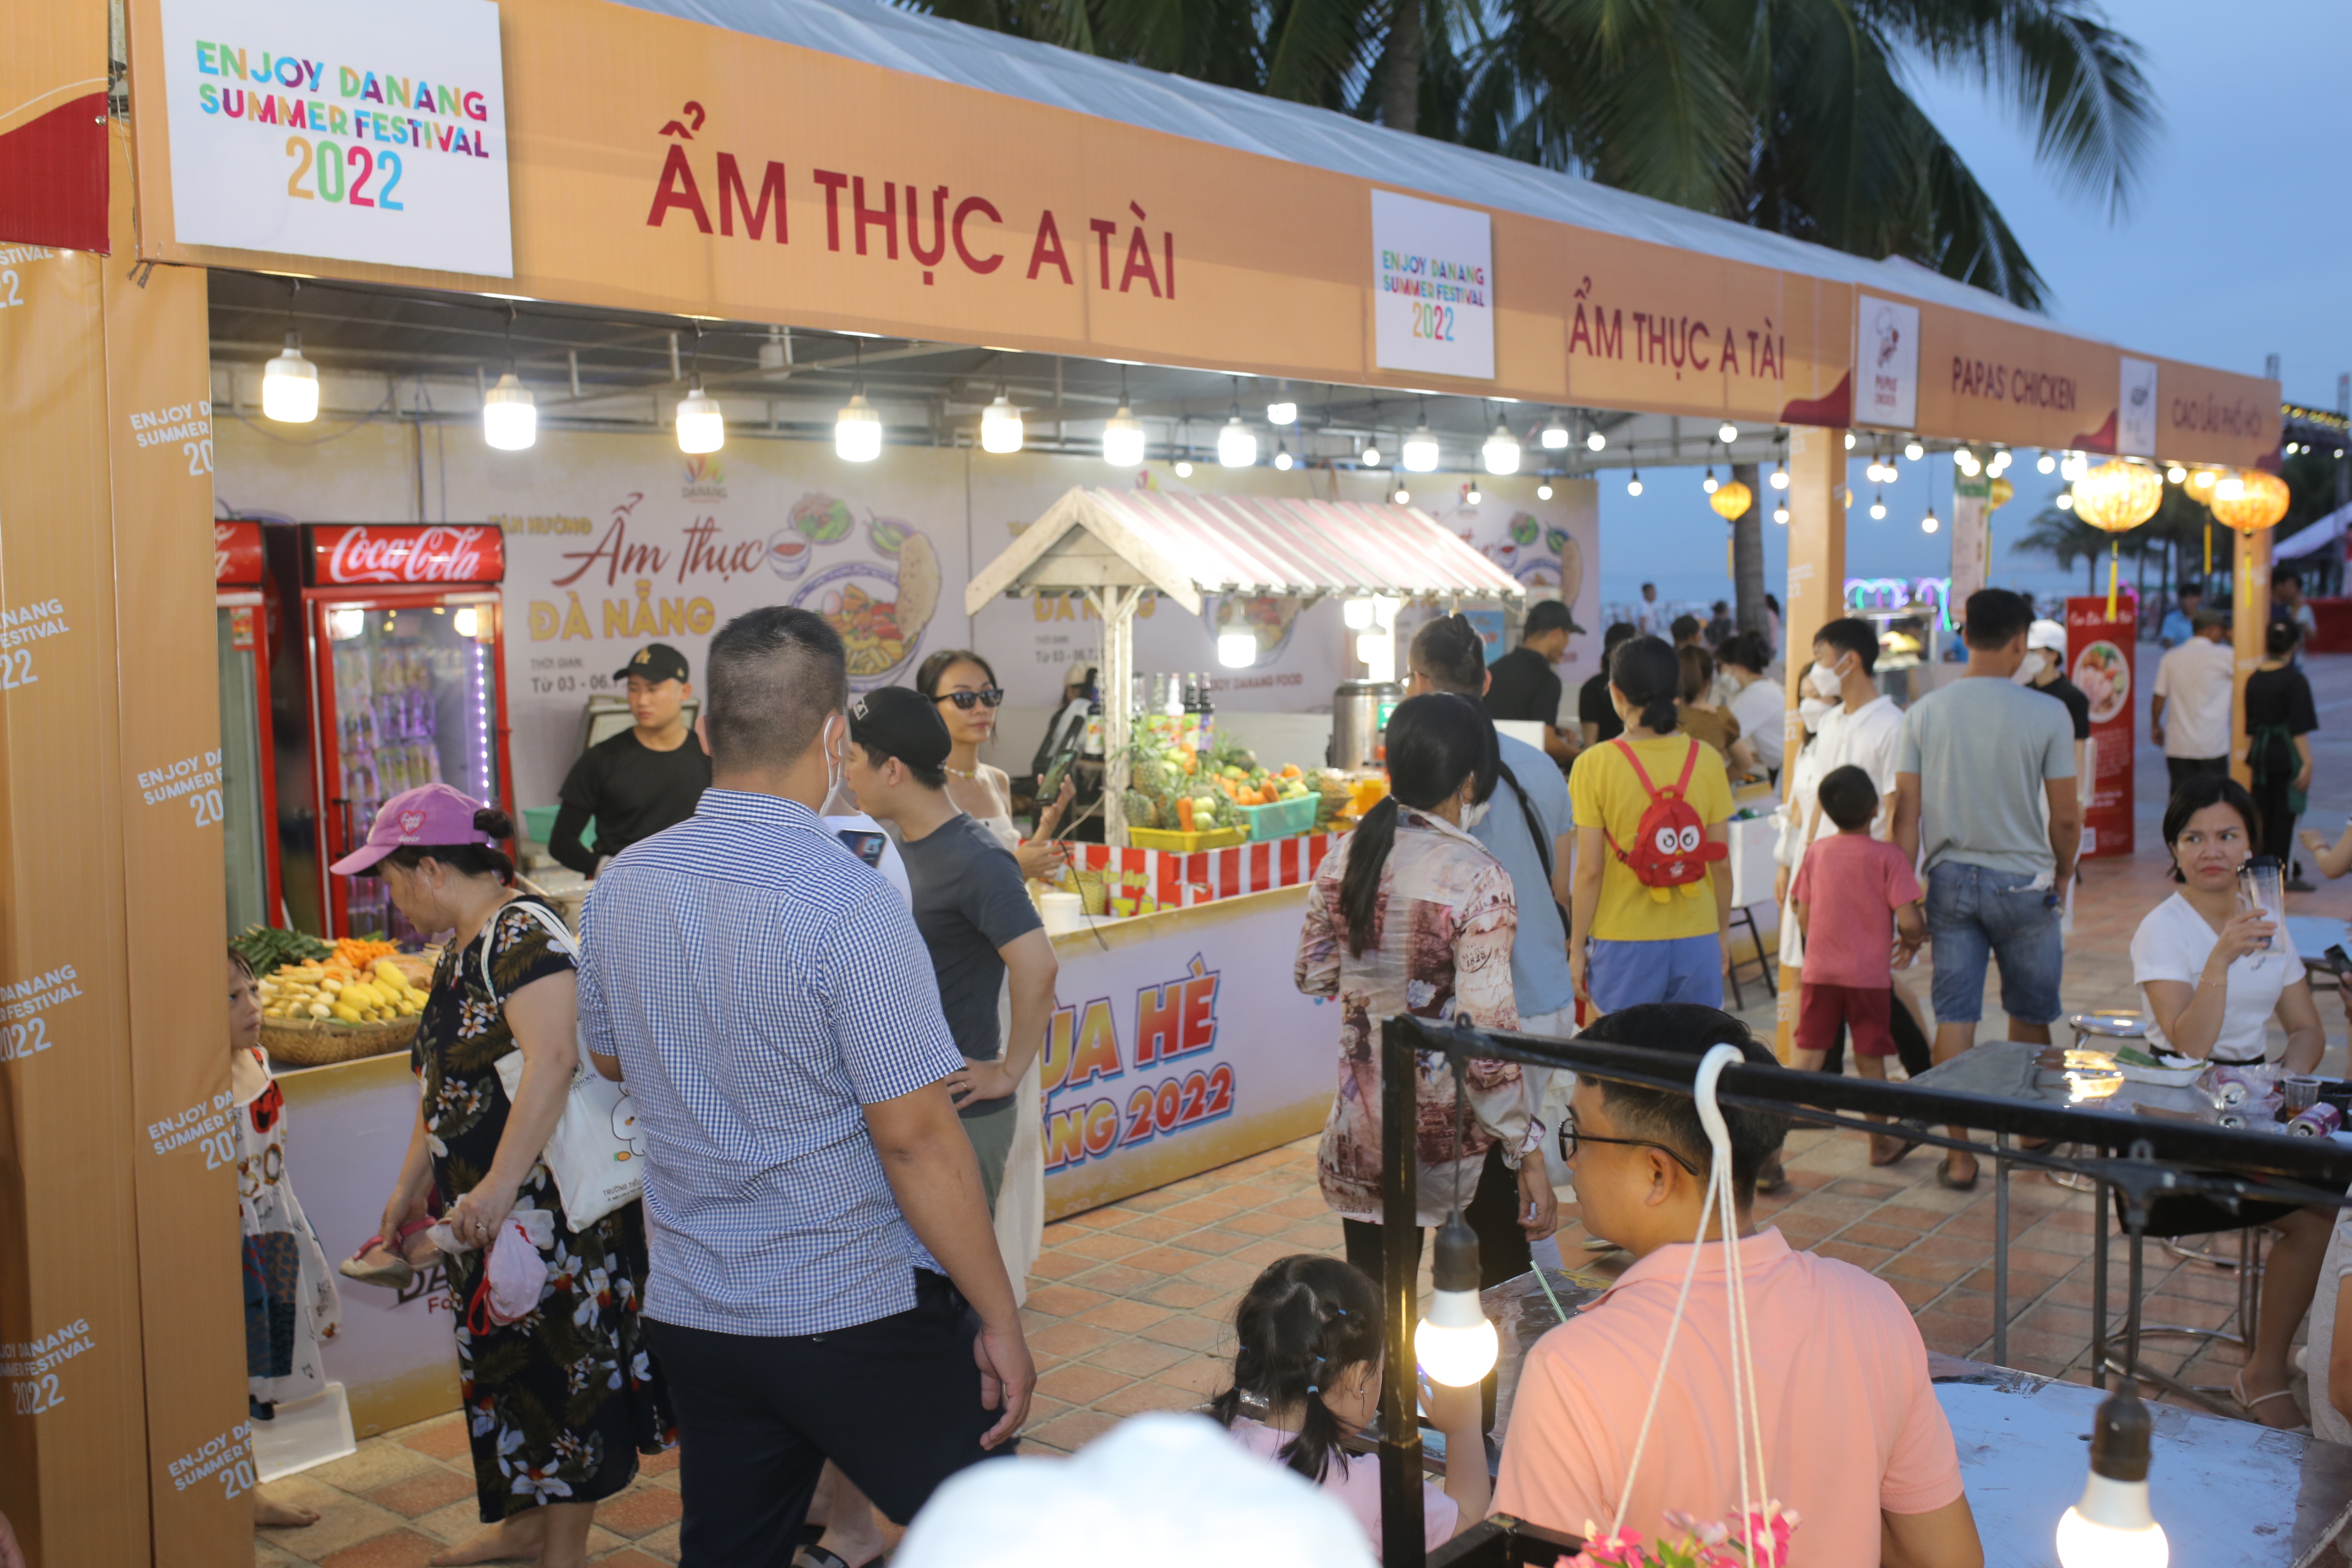 Lễ hội “Tận hưởng ẩm thực Đà Nẵng và Không gian bia” được tổ chức từ ngày 3 - 6/7/2022 tại công viên biển Đông, đường Võ Nguyên Giáp, quận Sơn Trà, Đà Nẵng